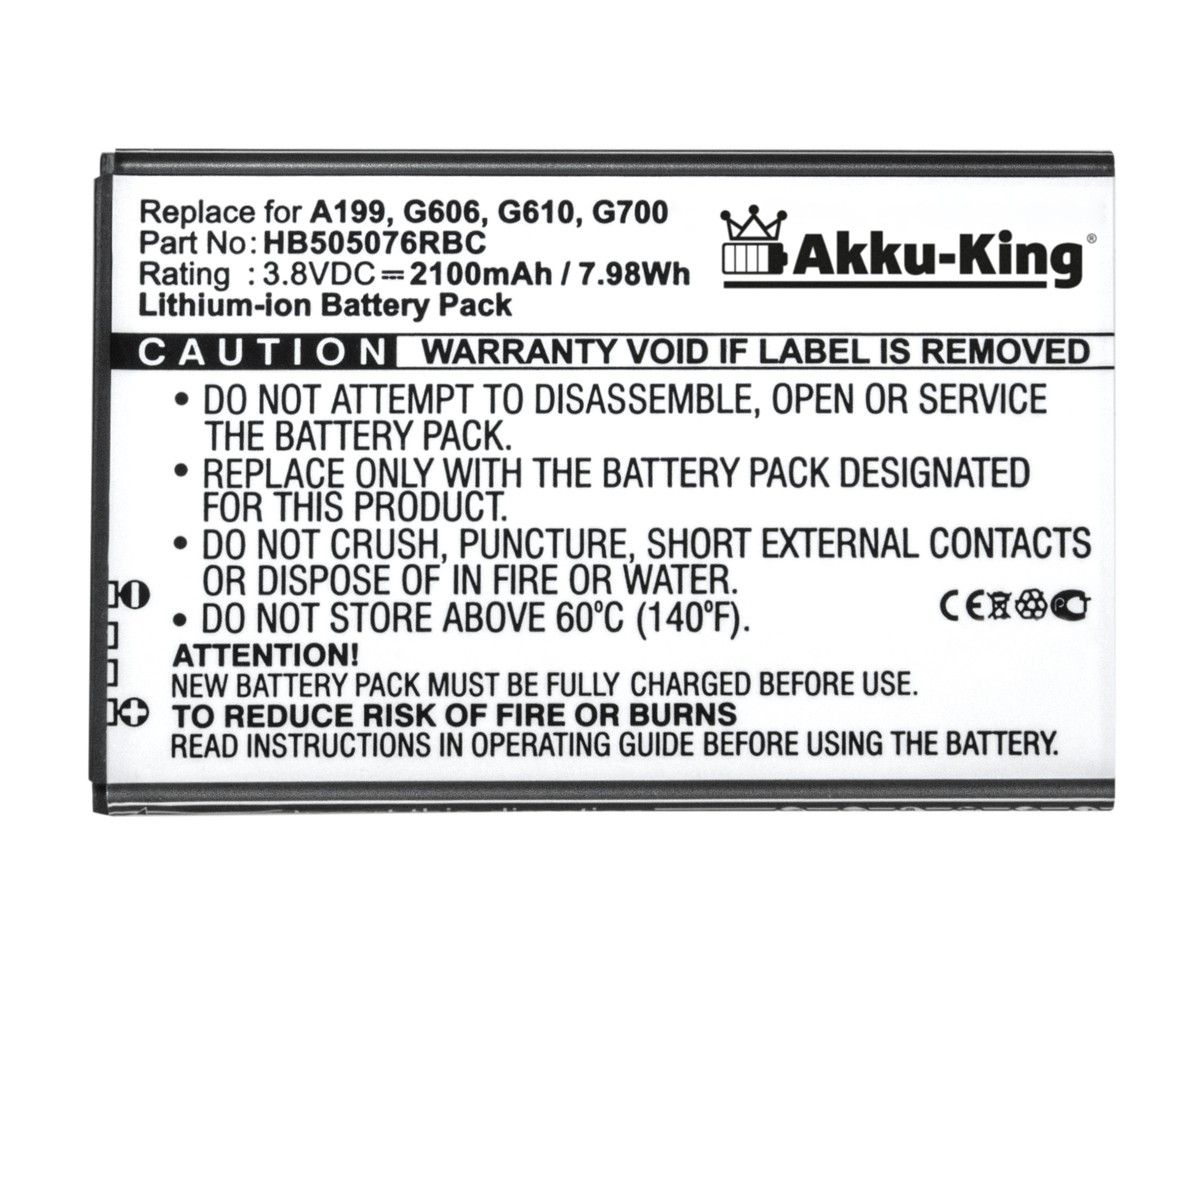 kompatibel Akku Volt, 2100mAh 3.8 Huawei HB505076RBC Handy-Akku, Li-Ion mit AKKU-KING